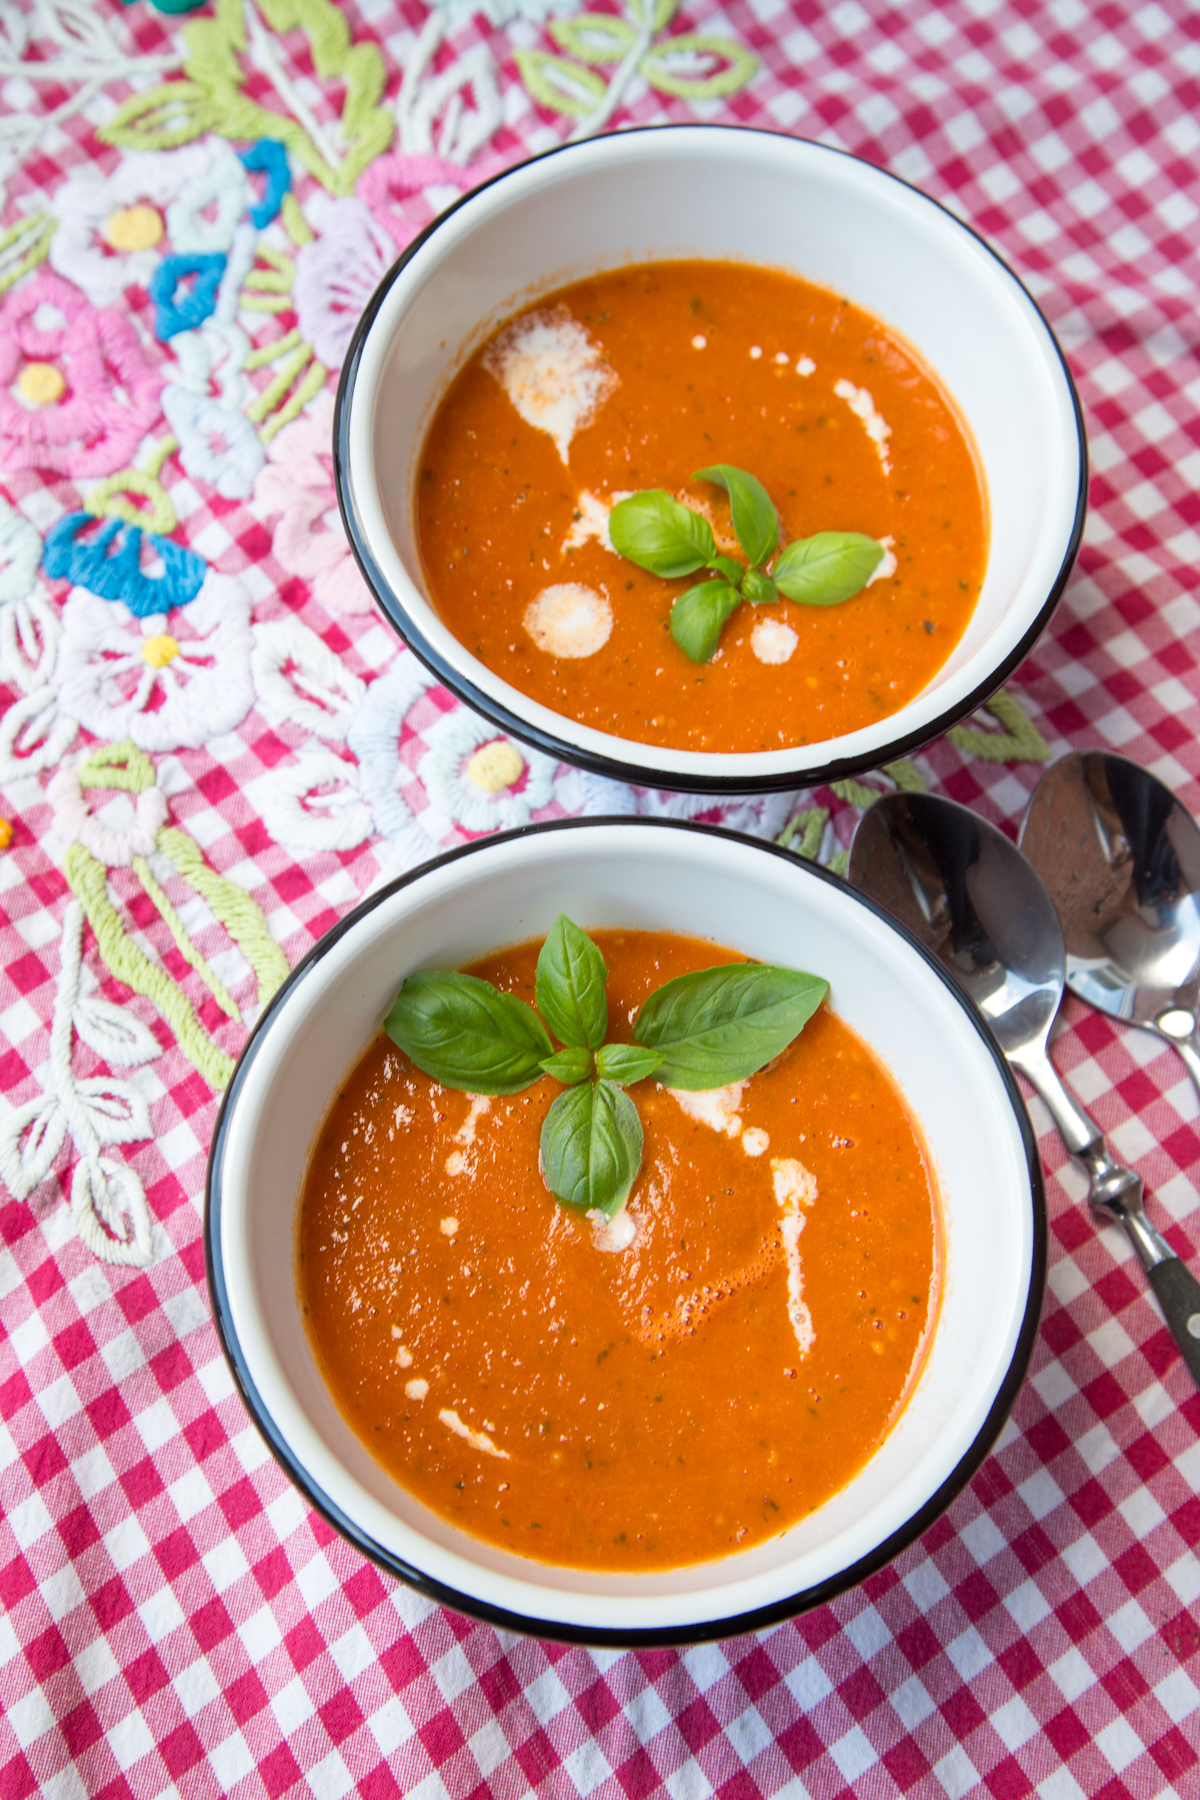 Schnelle und aromatische Ofentomatensuppe gefällig? Suppe kochen war noch nie so einfach! Die Tomaten werden im Ofen geröstet und die Suppe wird besonders gut